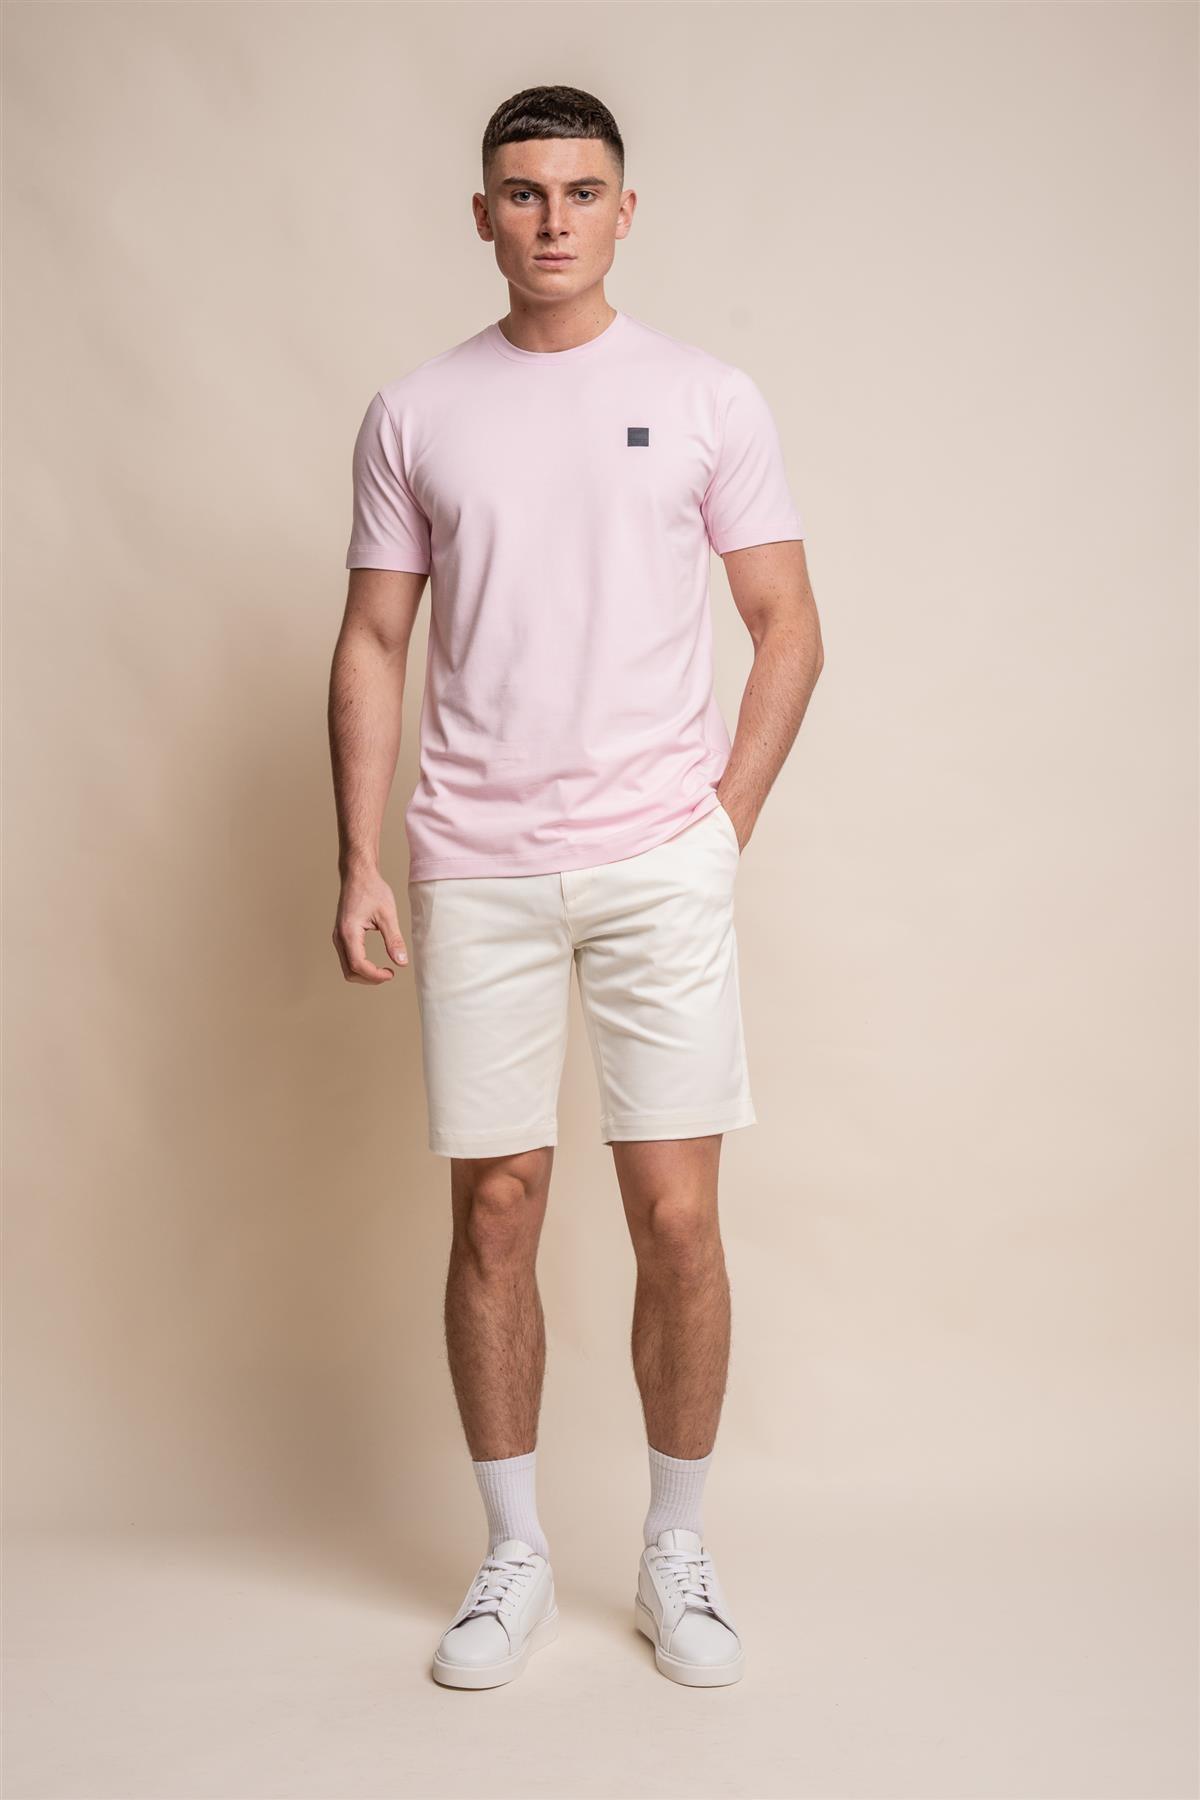 Bogart pink T-shirt front